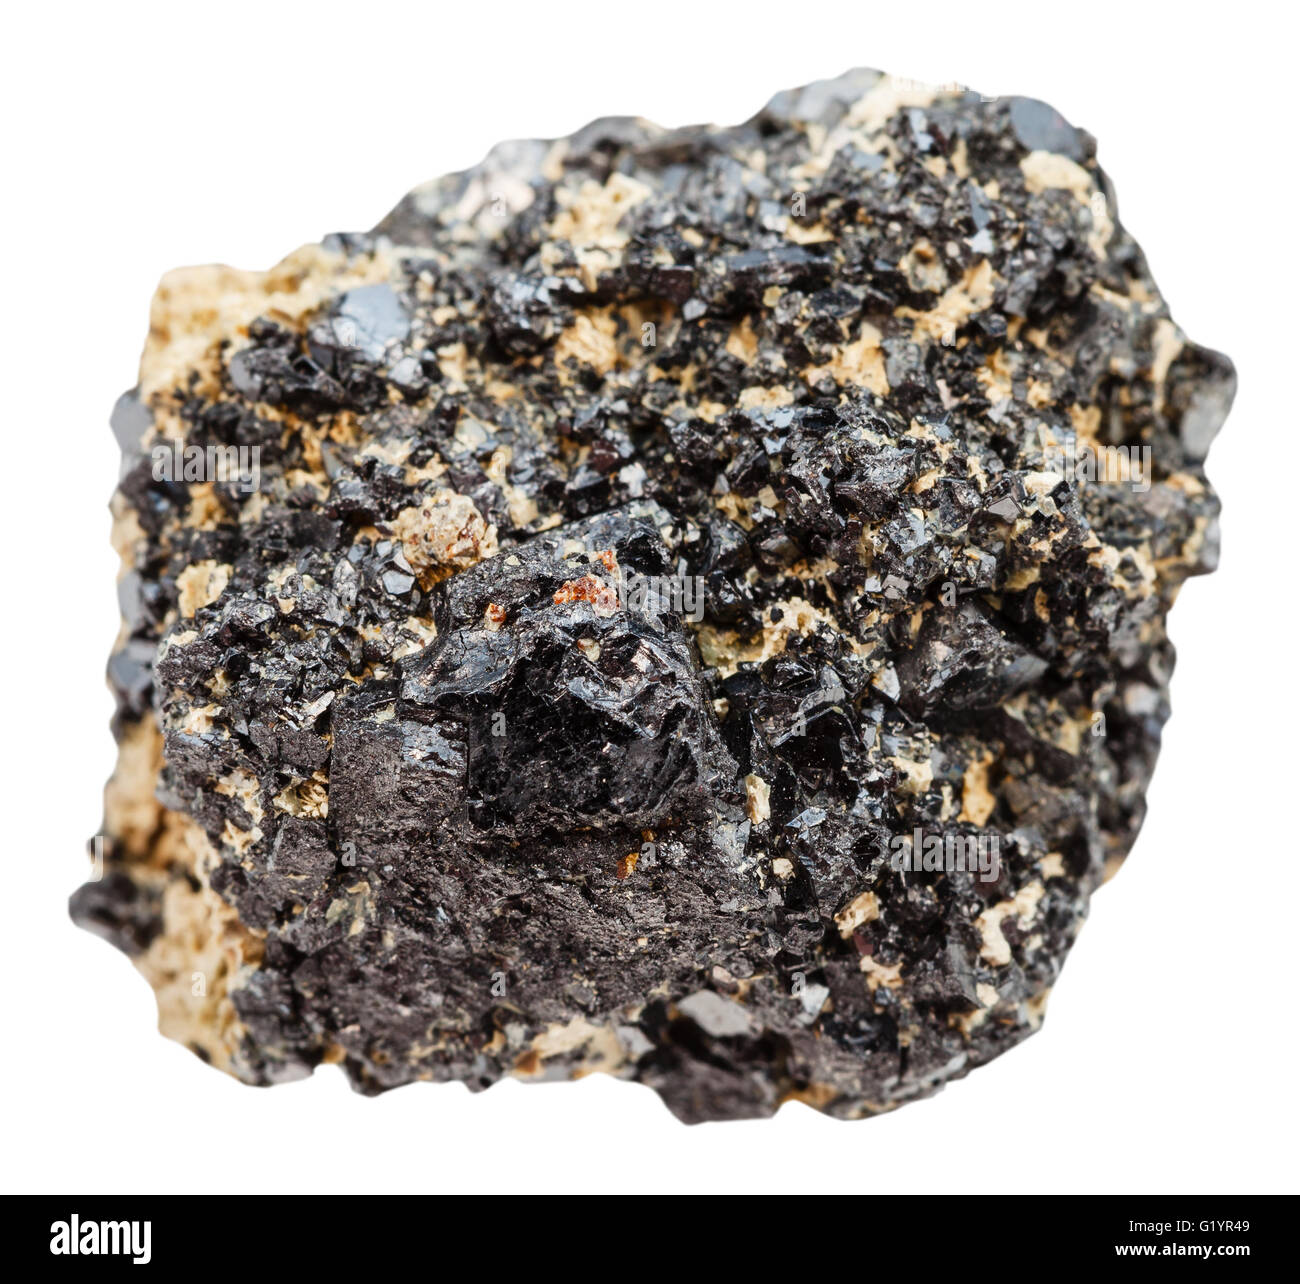 macro shooting of natural mineral stone - Perovskite stone (titanium ore - calcium titanium oxide mineral composed of calcium ti Stock Photo